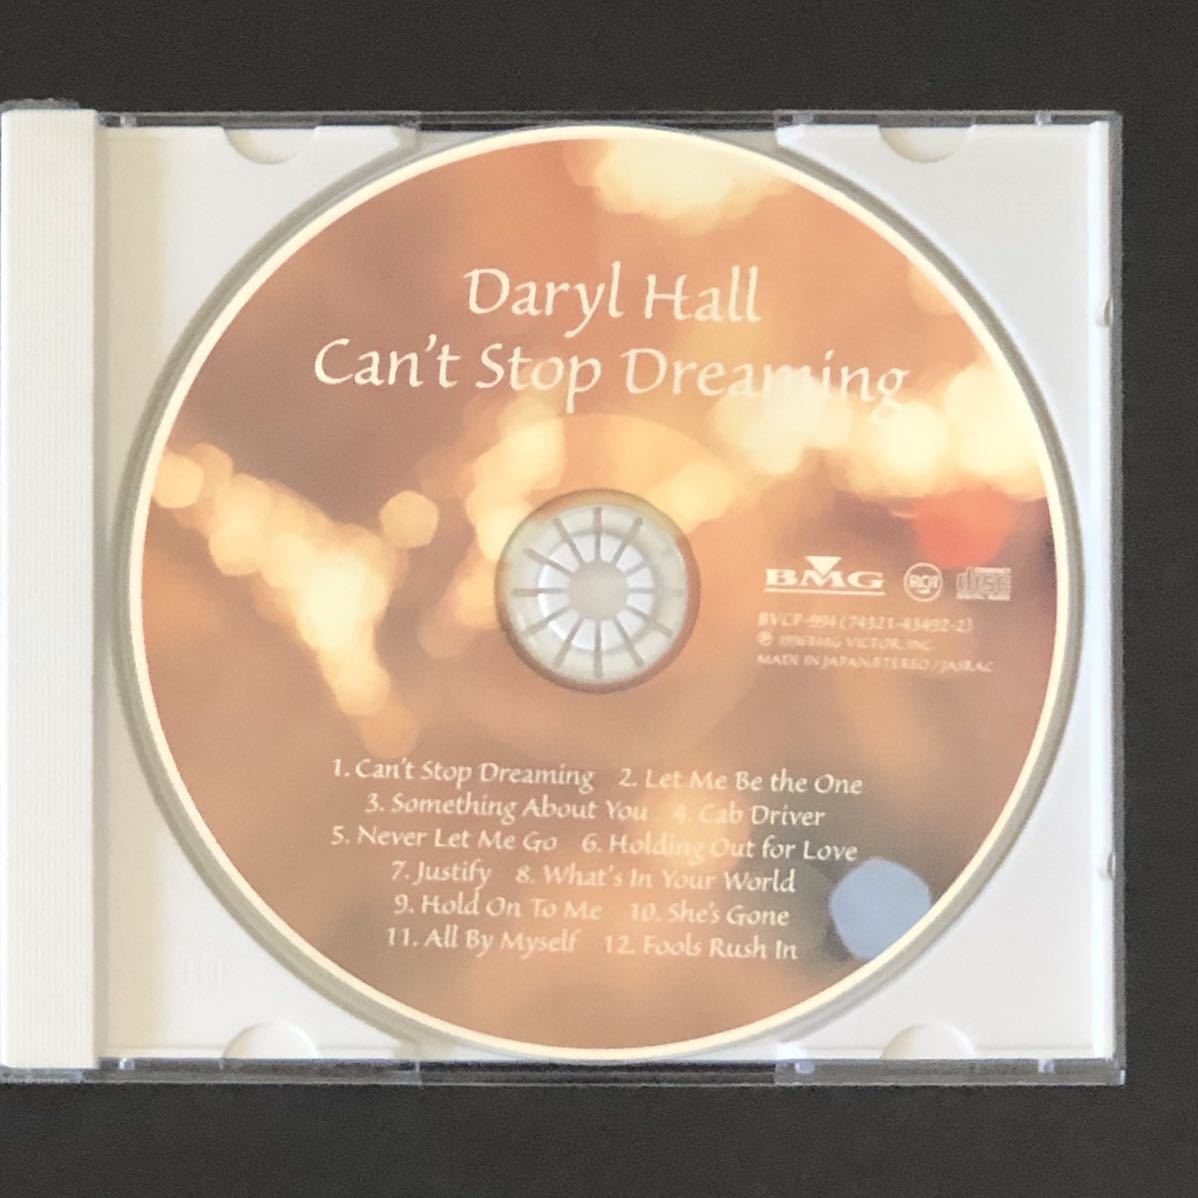 帯付03★CD「ダリル・ホール / キャント・ストップ・ドリーミング」★「Can't Stop Dreaming」1996年 美品 Daryl Hall & John Oates/H&O